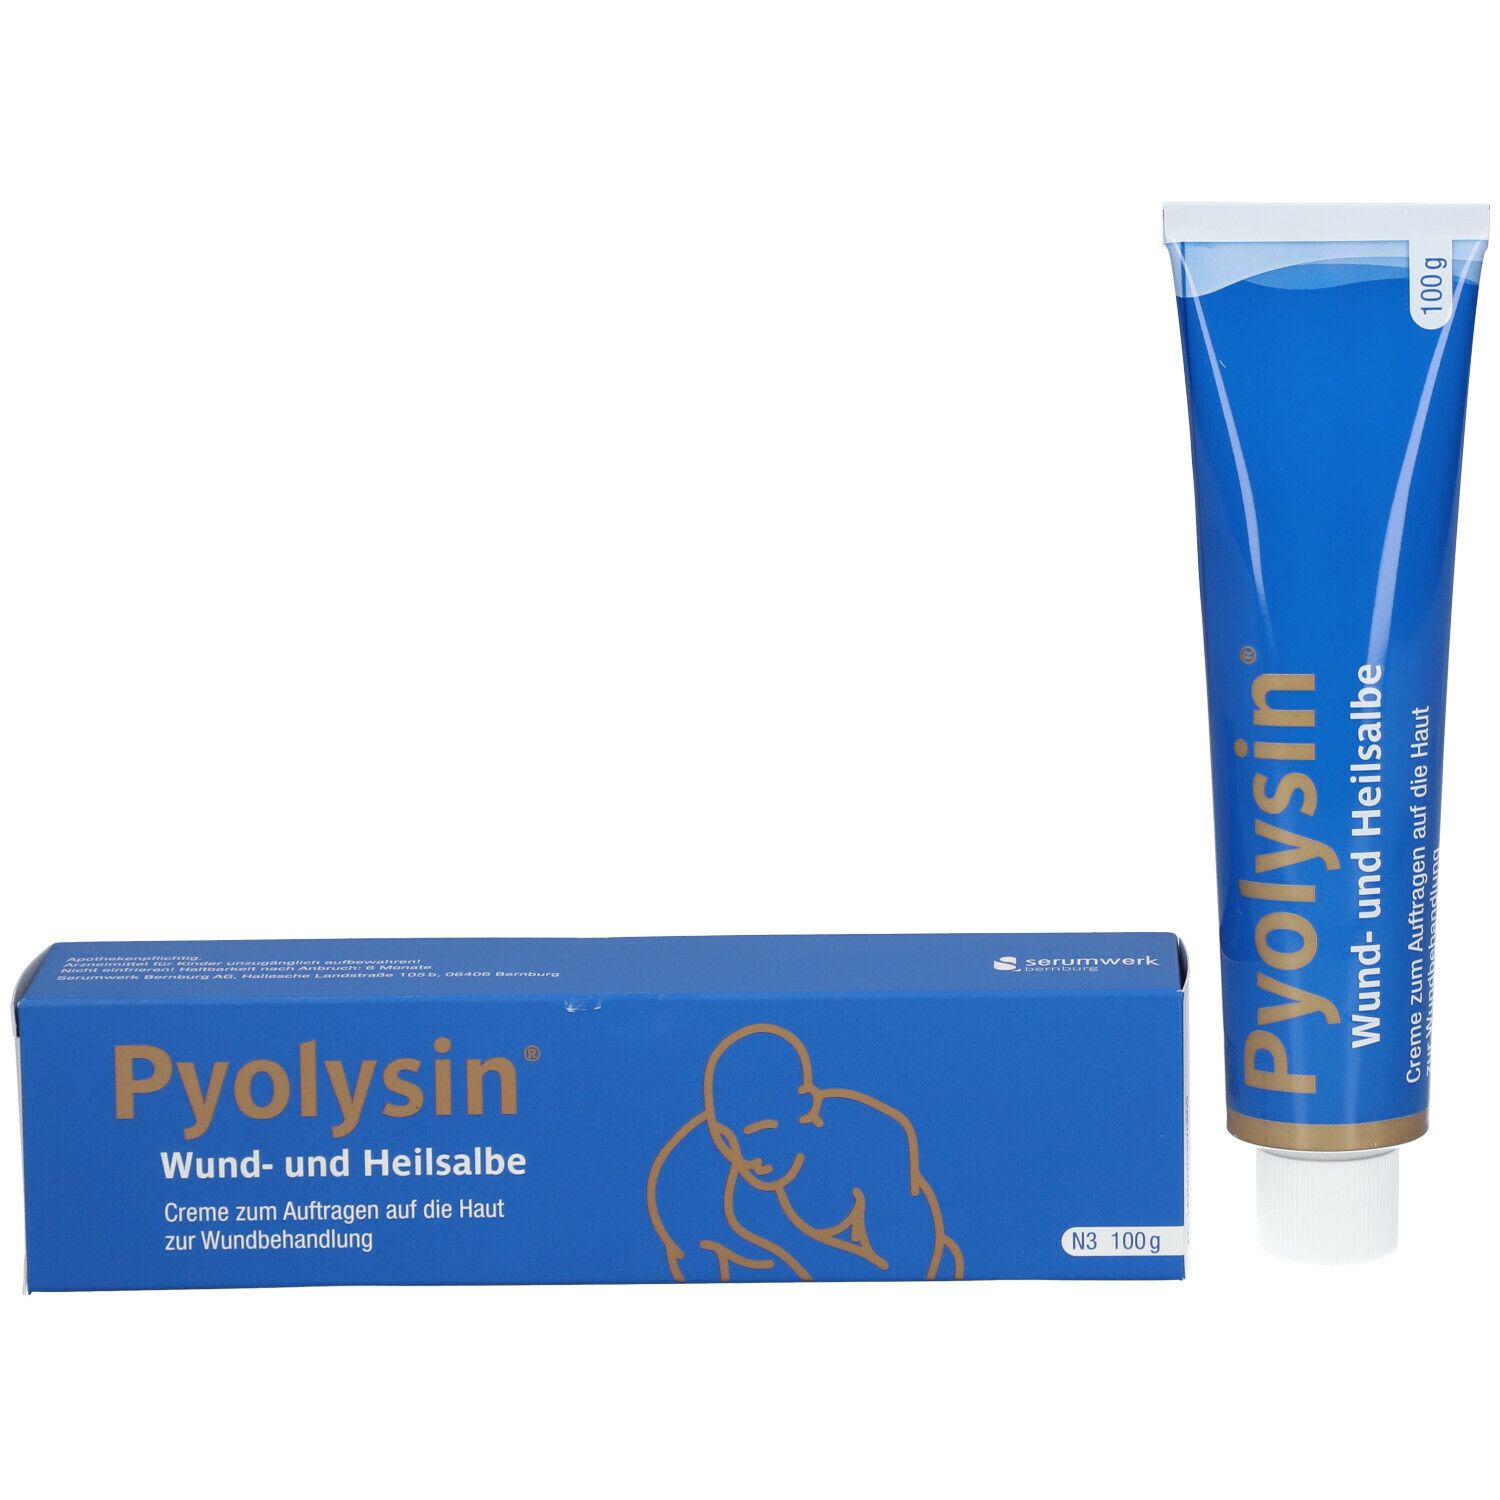 Pyolysin® Wund- und Heilsalbe